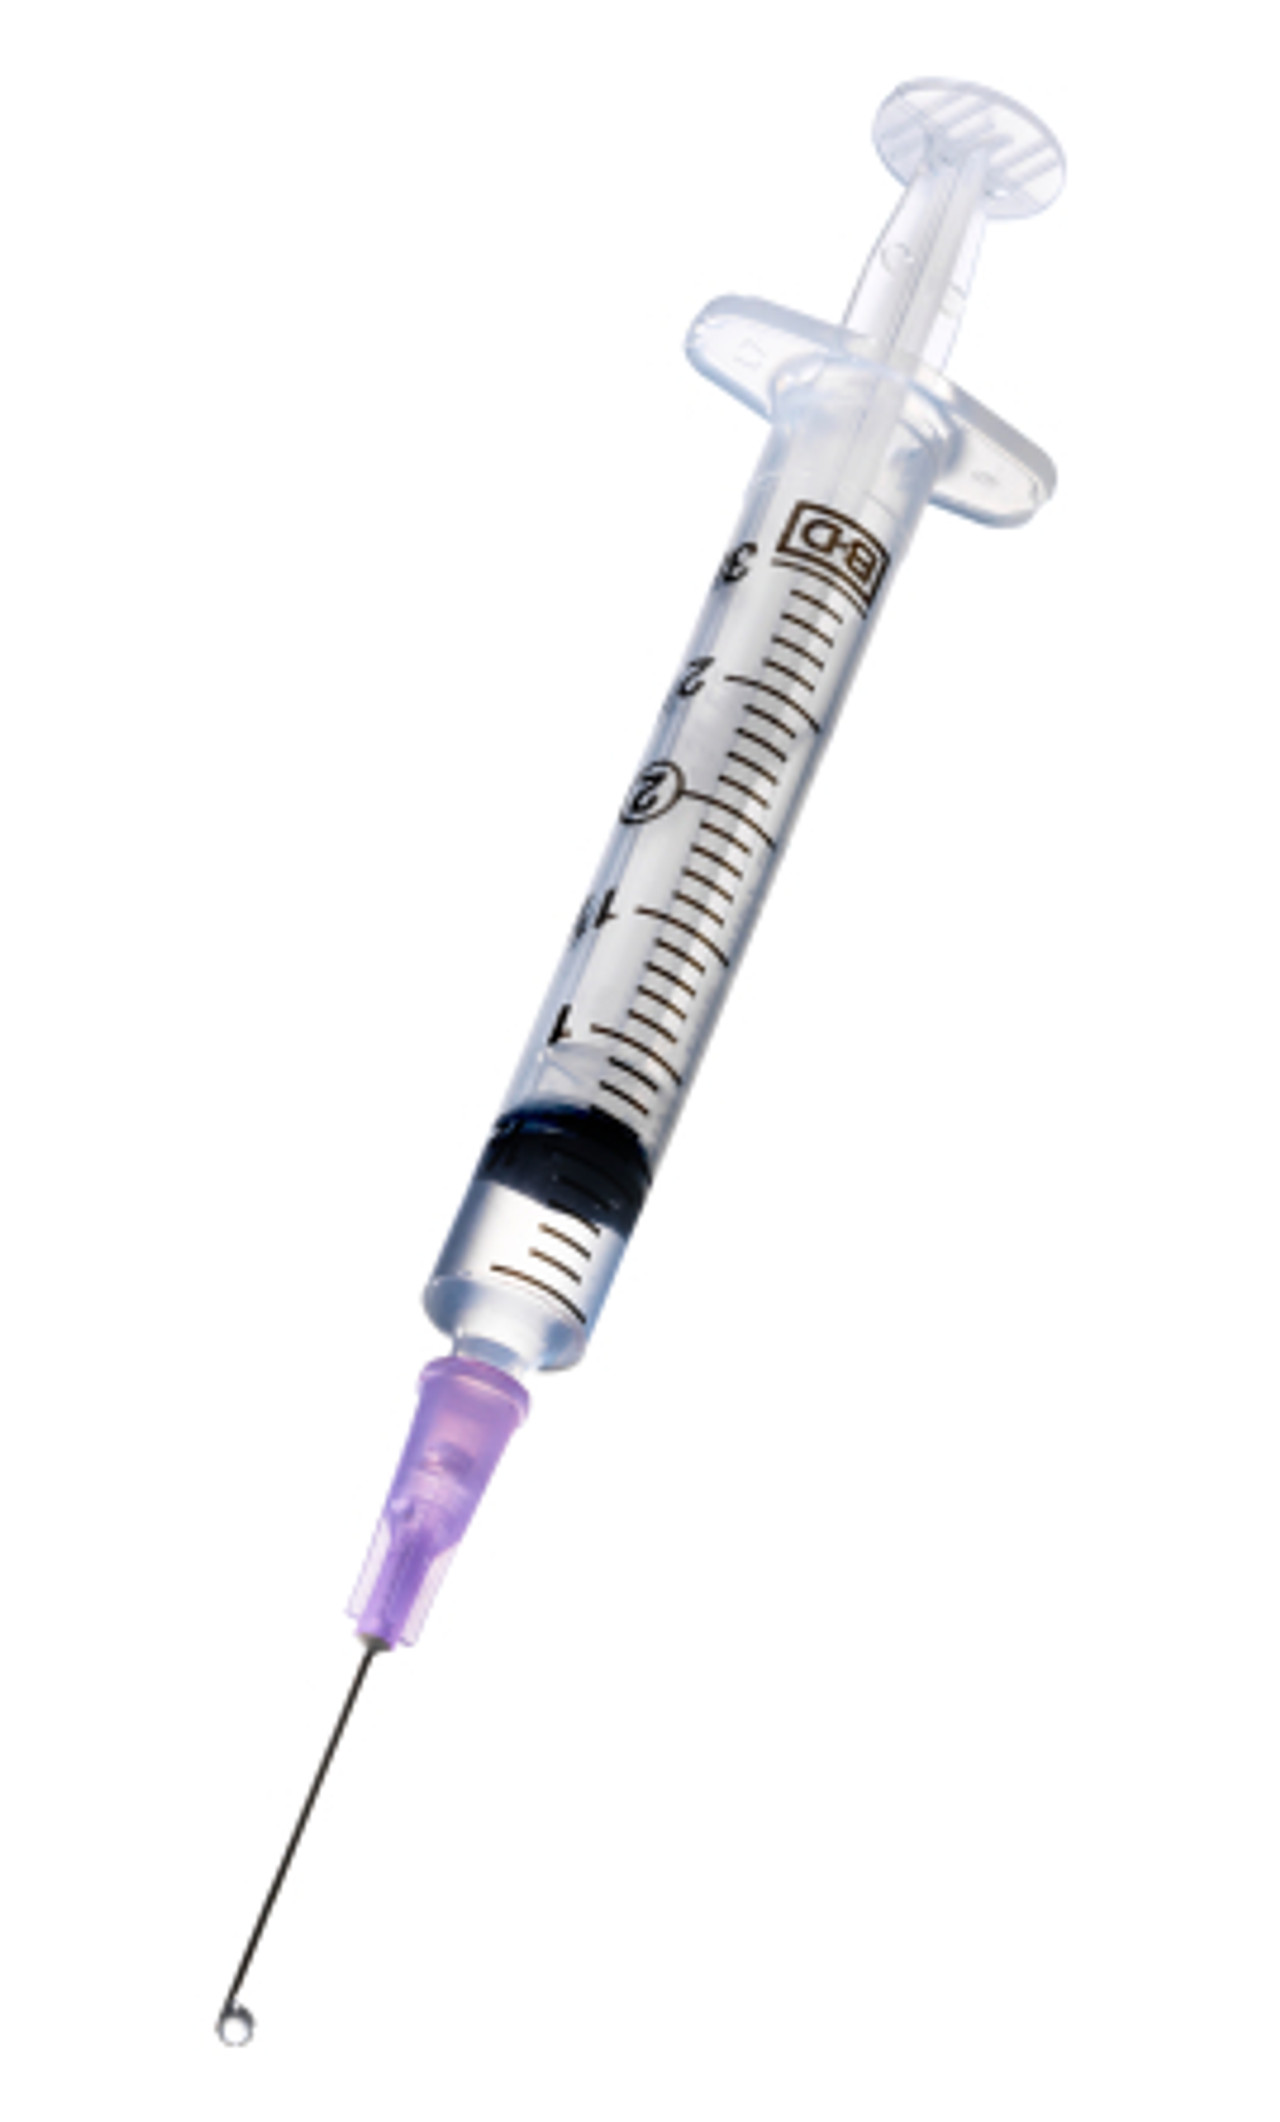 buy standard syringes online